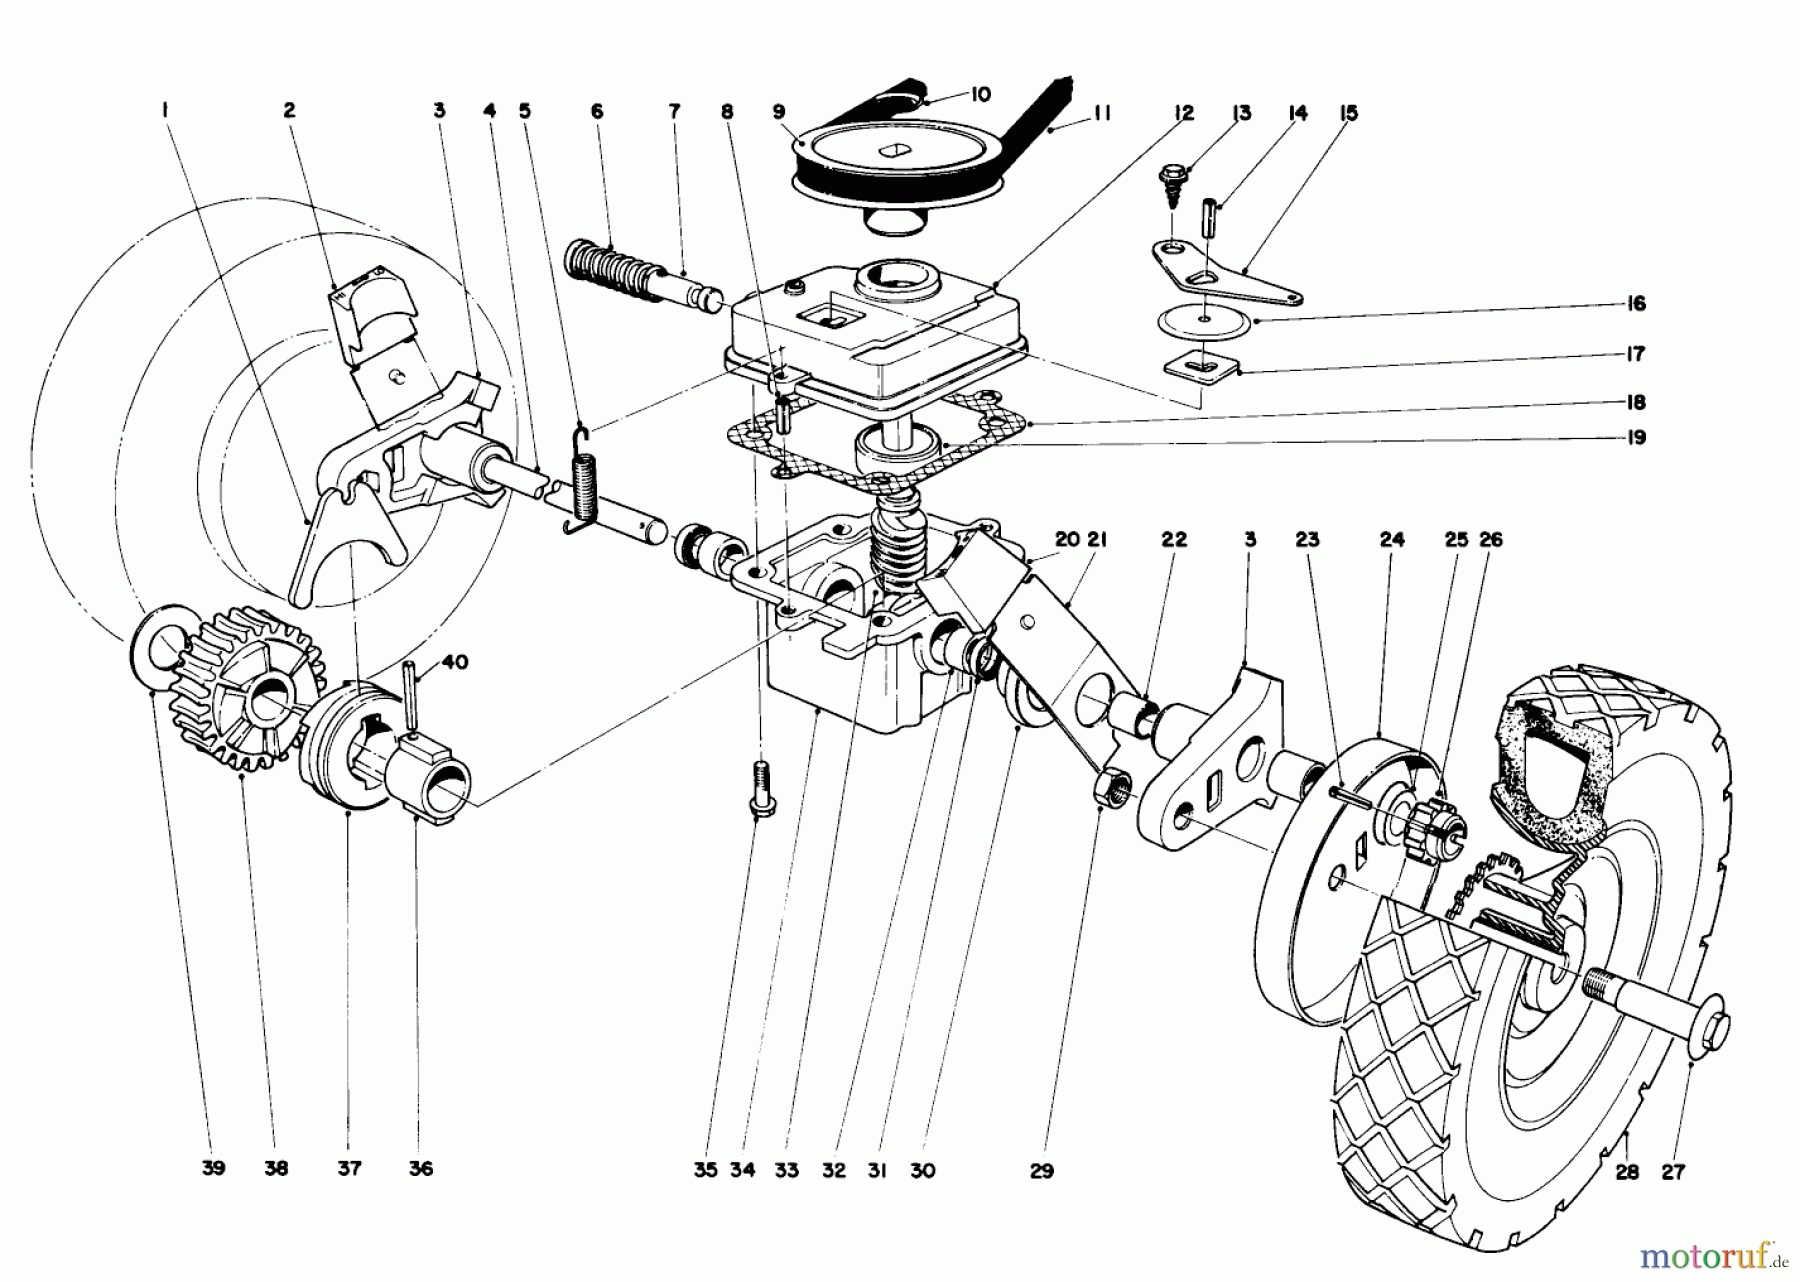  Toro Neu Mowers, Walk-Behind Seite 1 16273 - Toro Whirlwind Lawnmower, 1974 (4000001-4999999) GEAR BOX ASSEMBLY